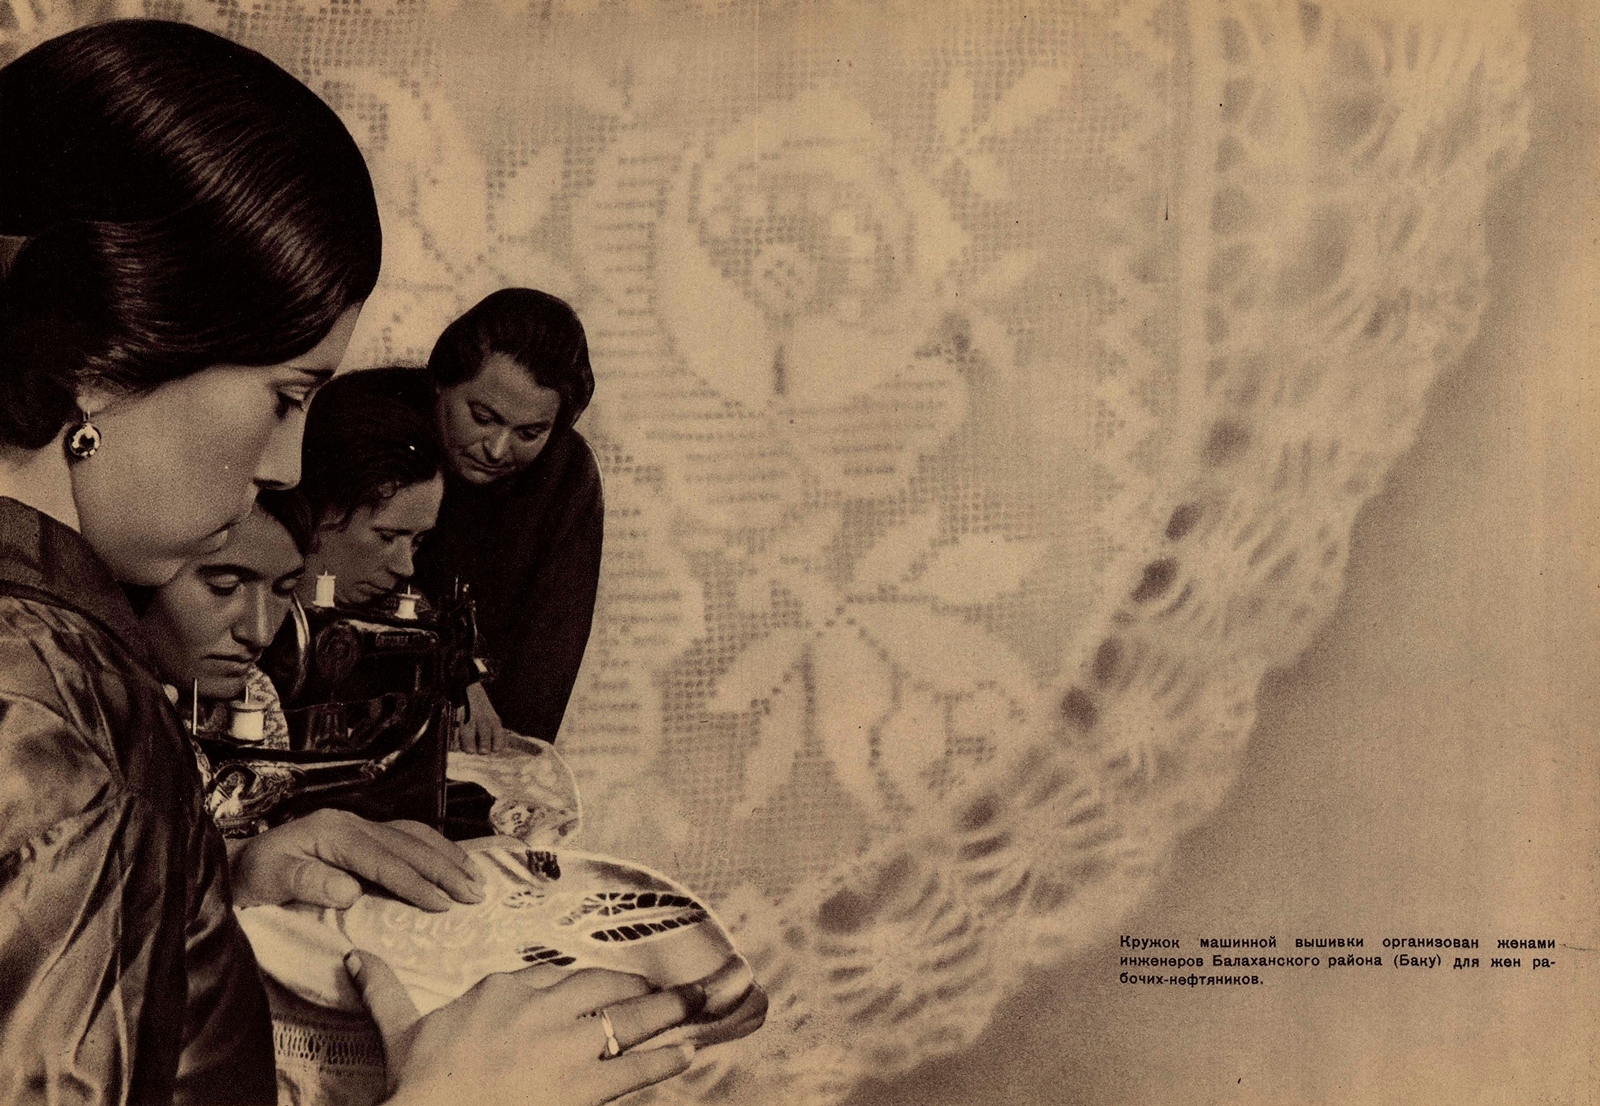 Кружок машинной вышивки организован женами инженеров Балаханского района (Баку) для жен рабочих-нефтяников.